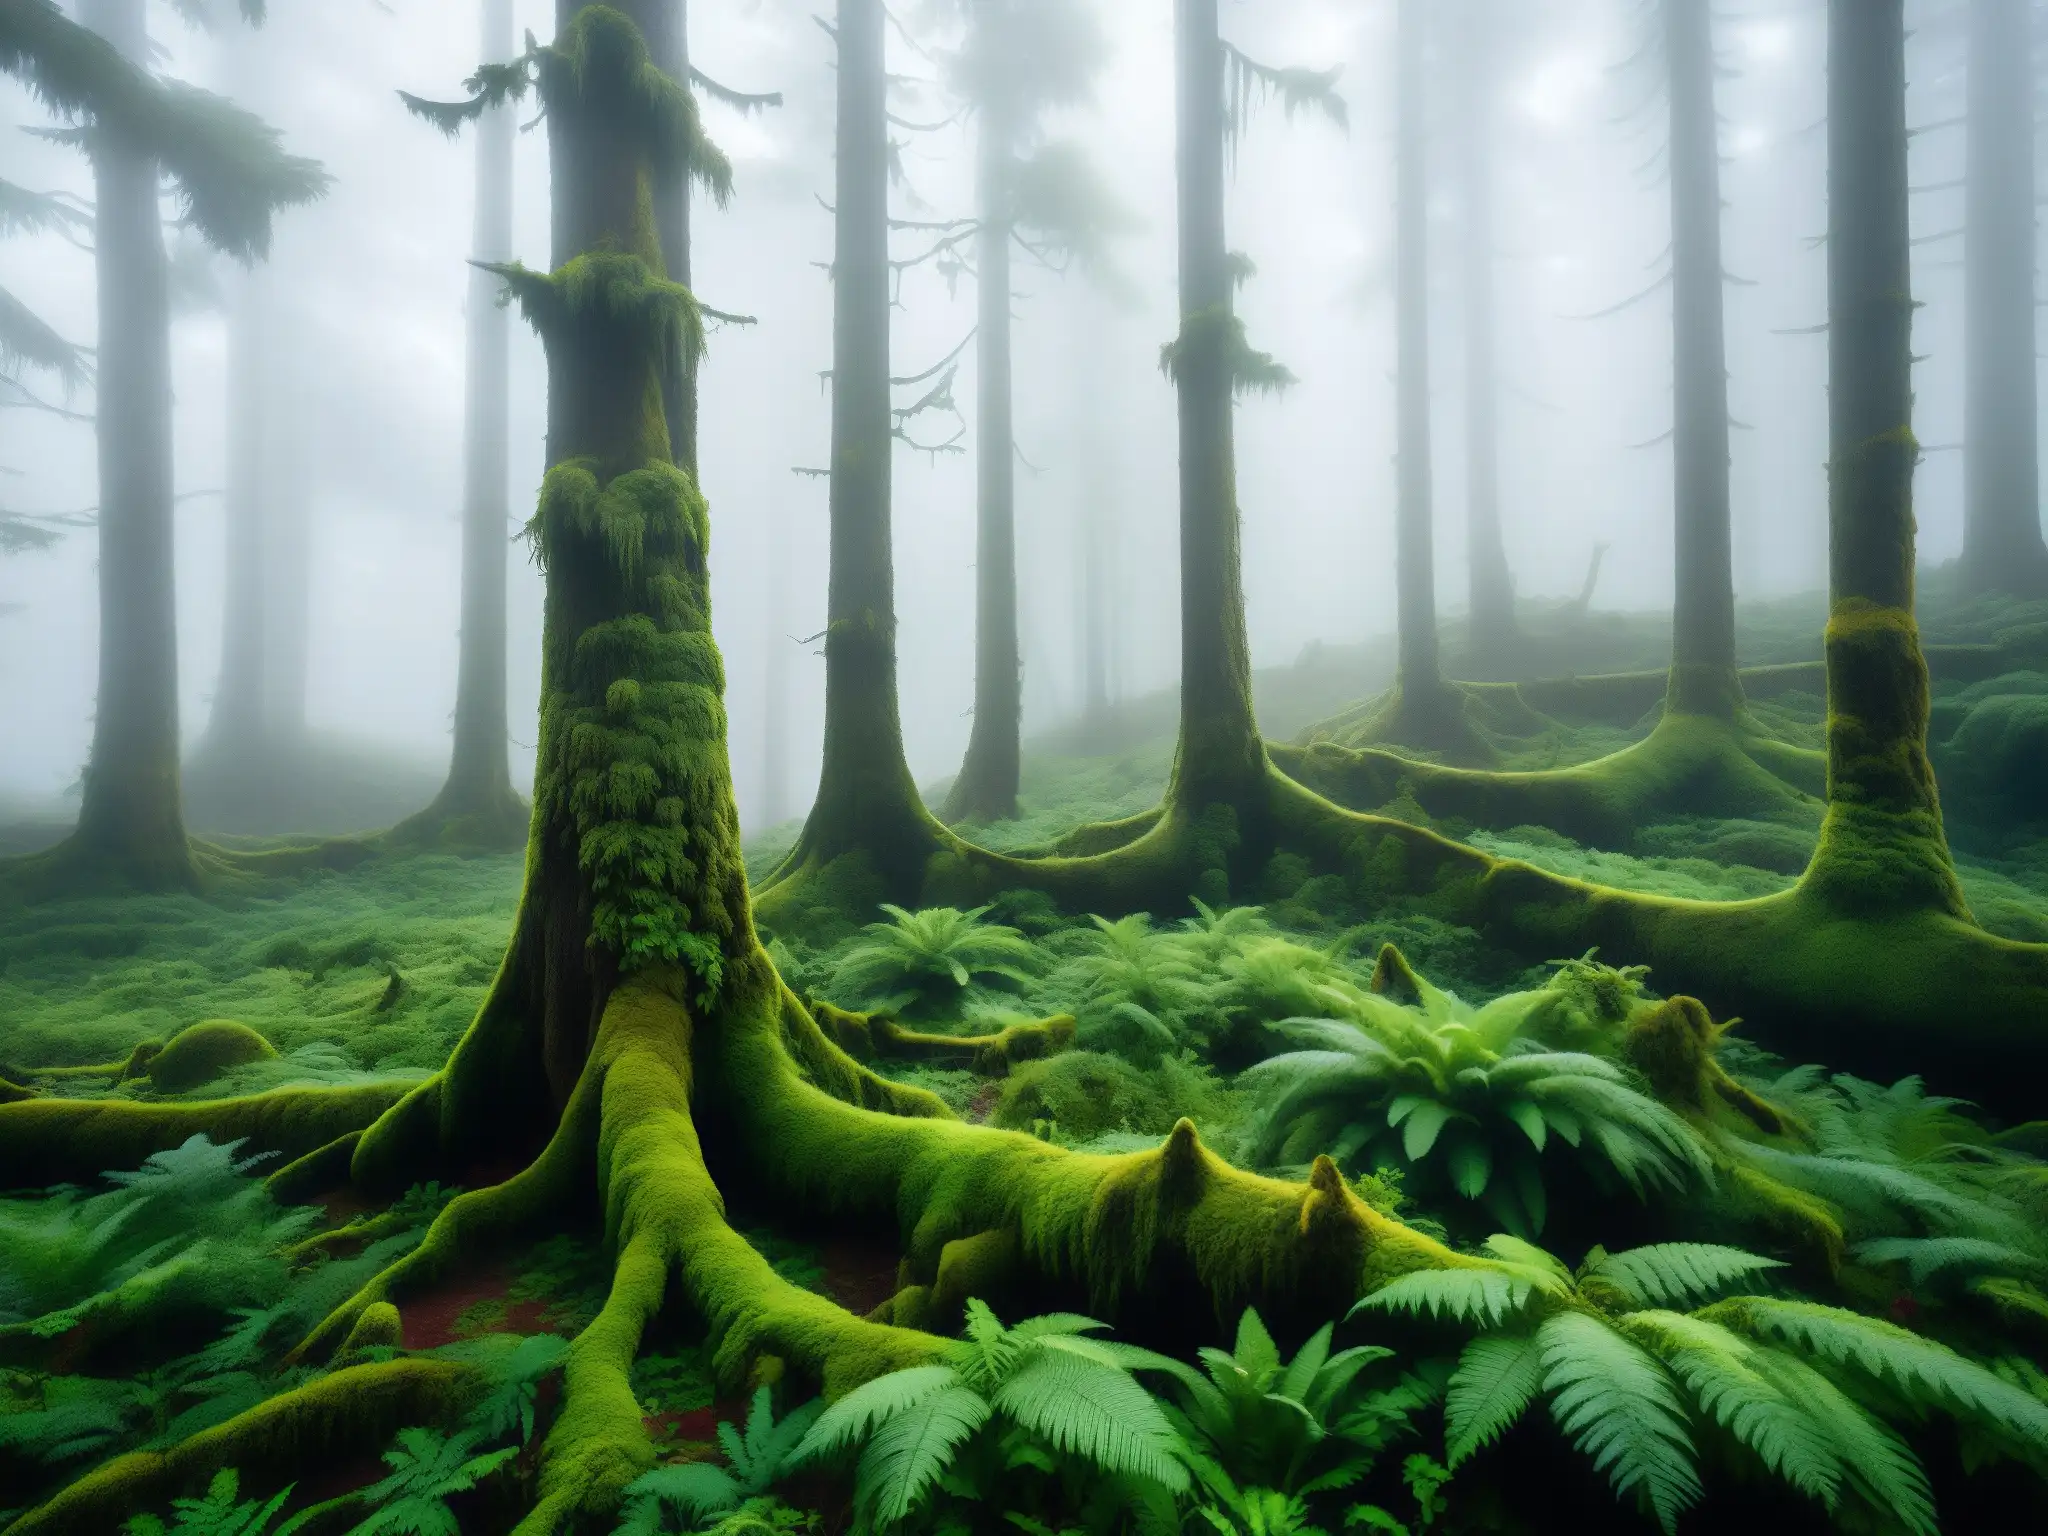 Bosque místico y neblinoso en Chiloé, Chile, hogar del misterioso Basilisco Chilote de la mitología chilena